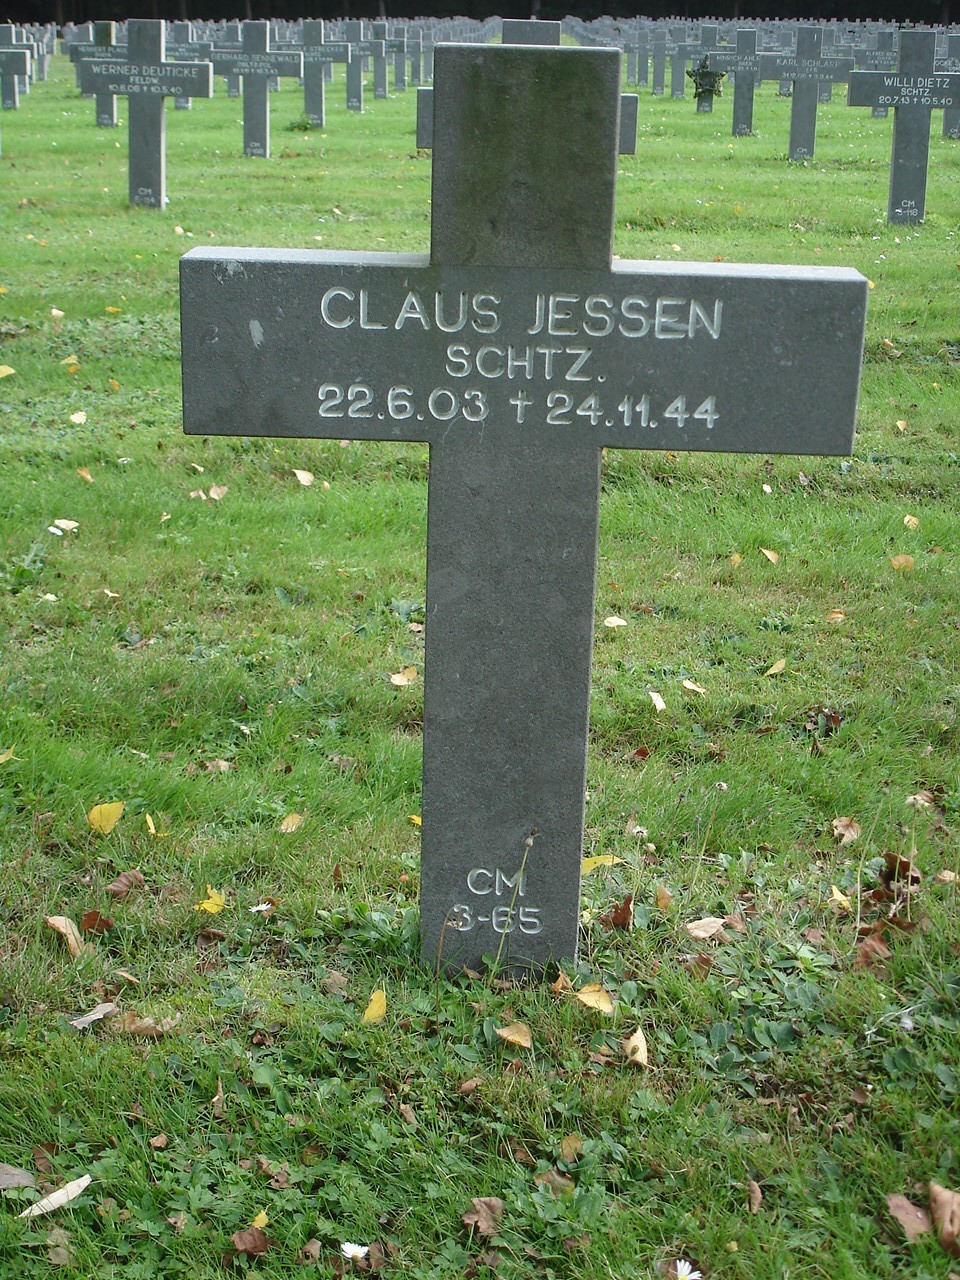 Claus Jessen